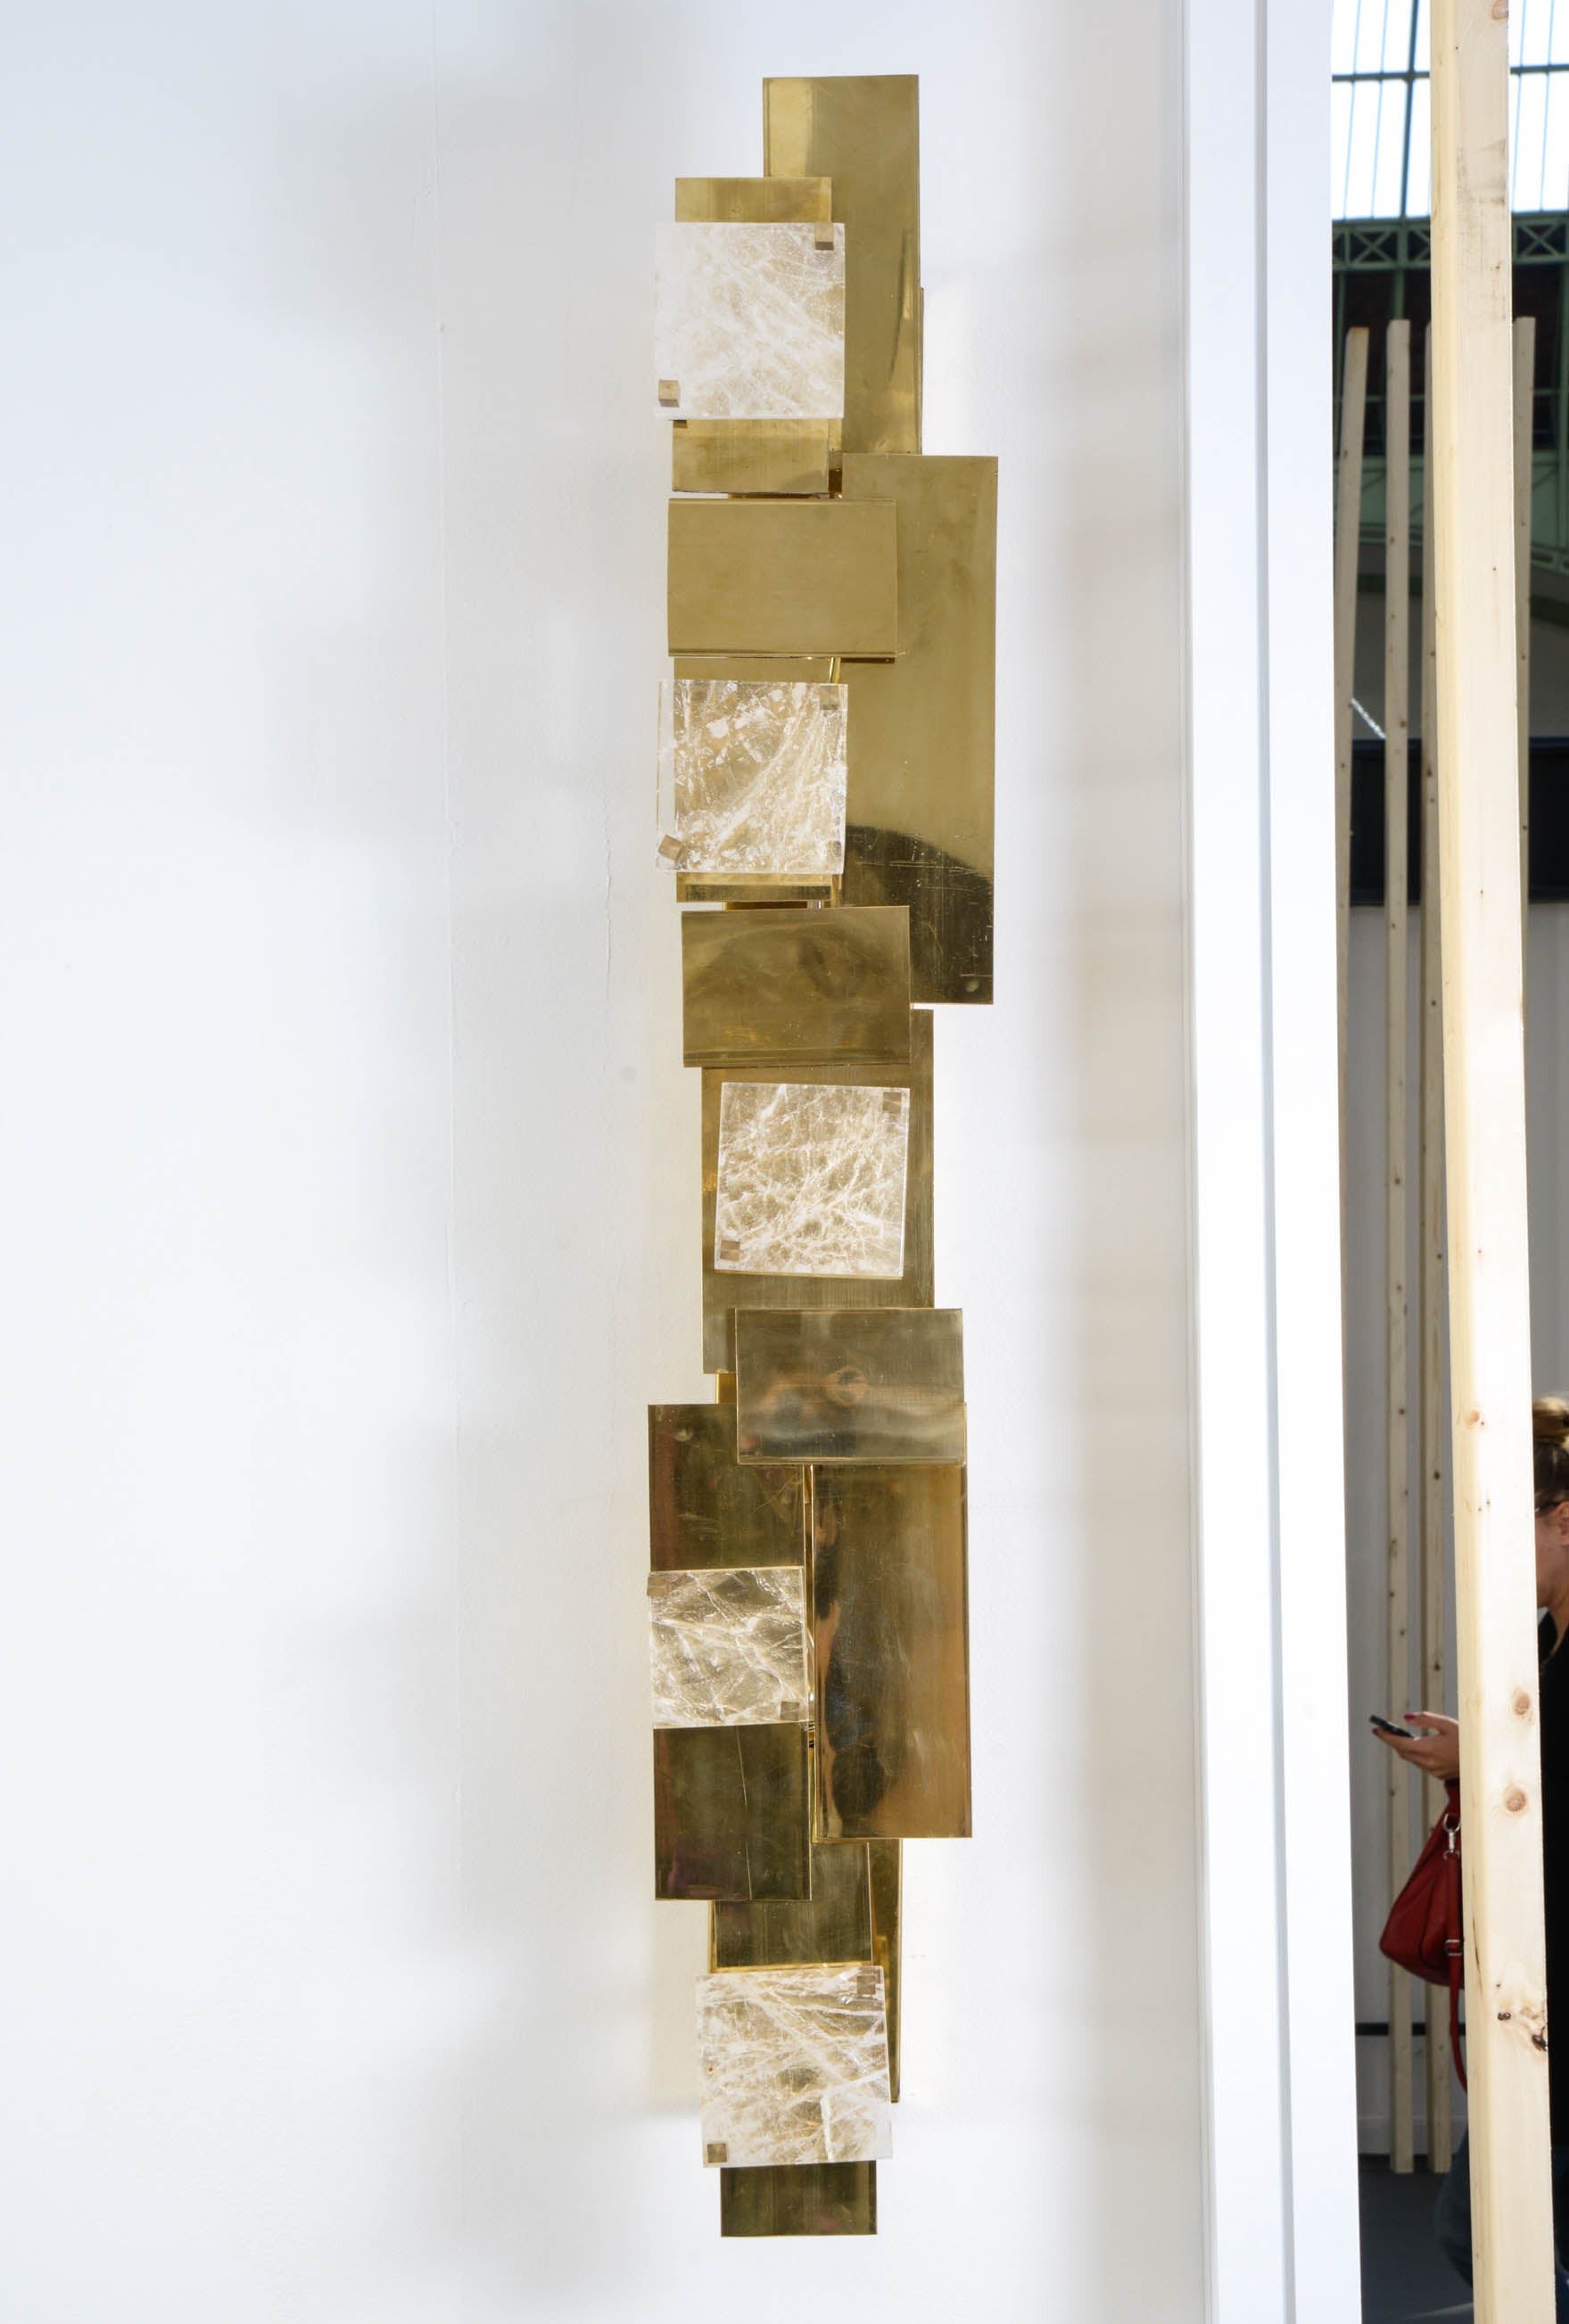 Paire d'appliques en laiton et cristal de roche, nombreux éclairages, édition 8 pièces seulement, création de la Galerie Glustin
Exposé au Salon Révélations au Grand Palais, Paris, septembre 2015.